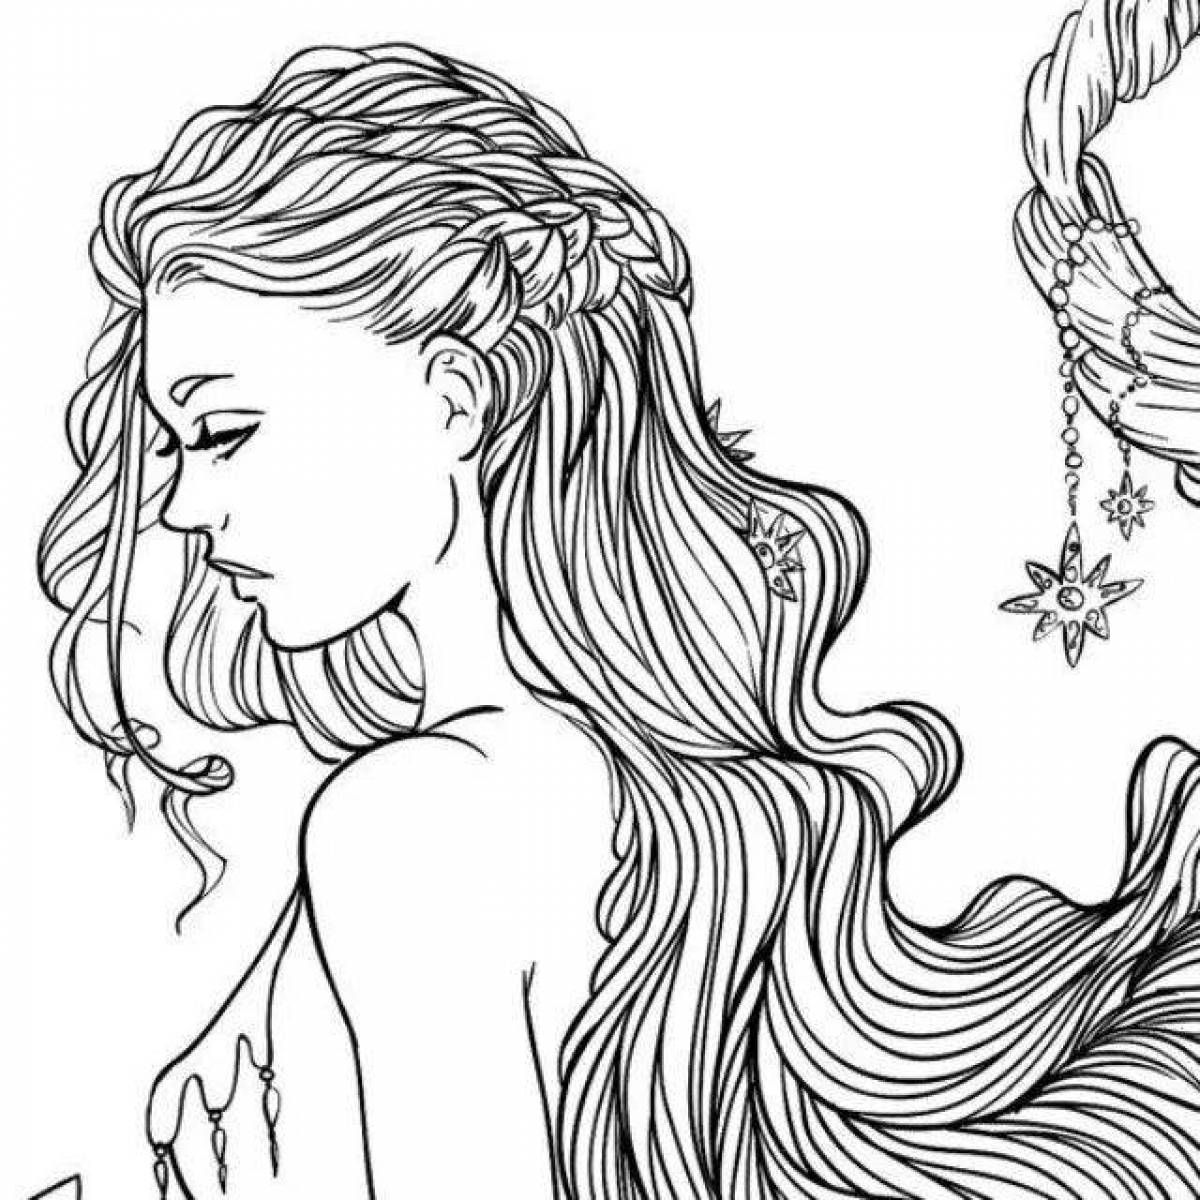 Мечтательная раскраска девушки с длинными волосами